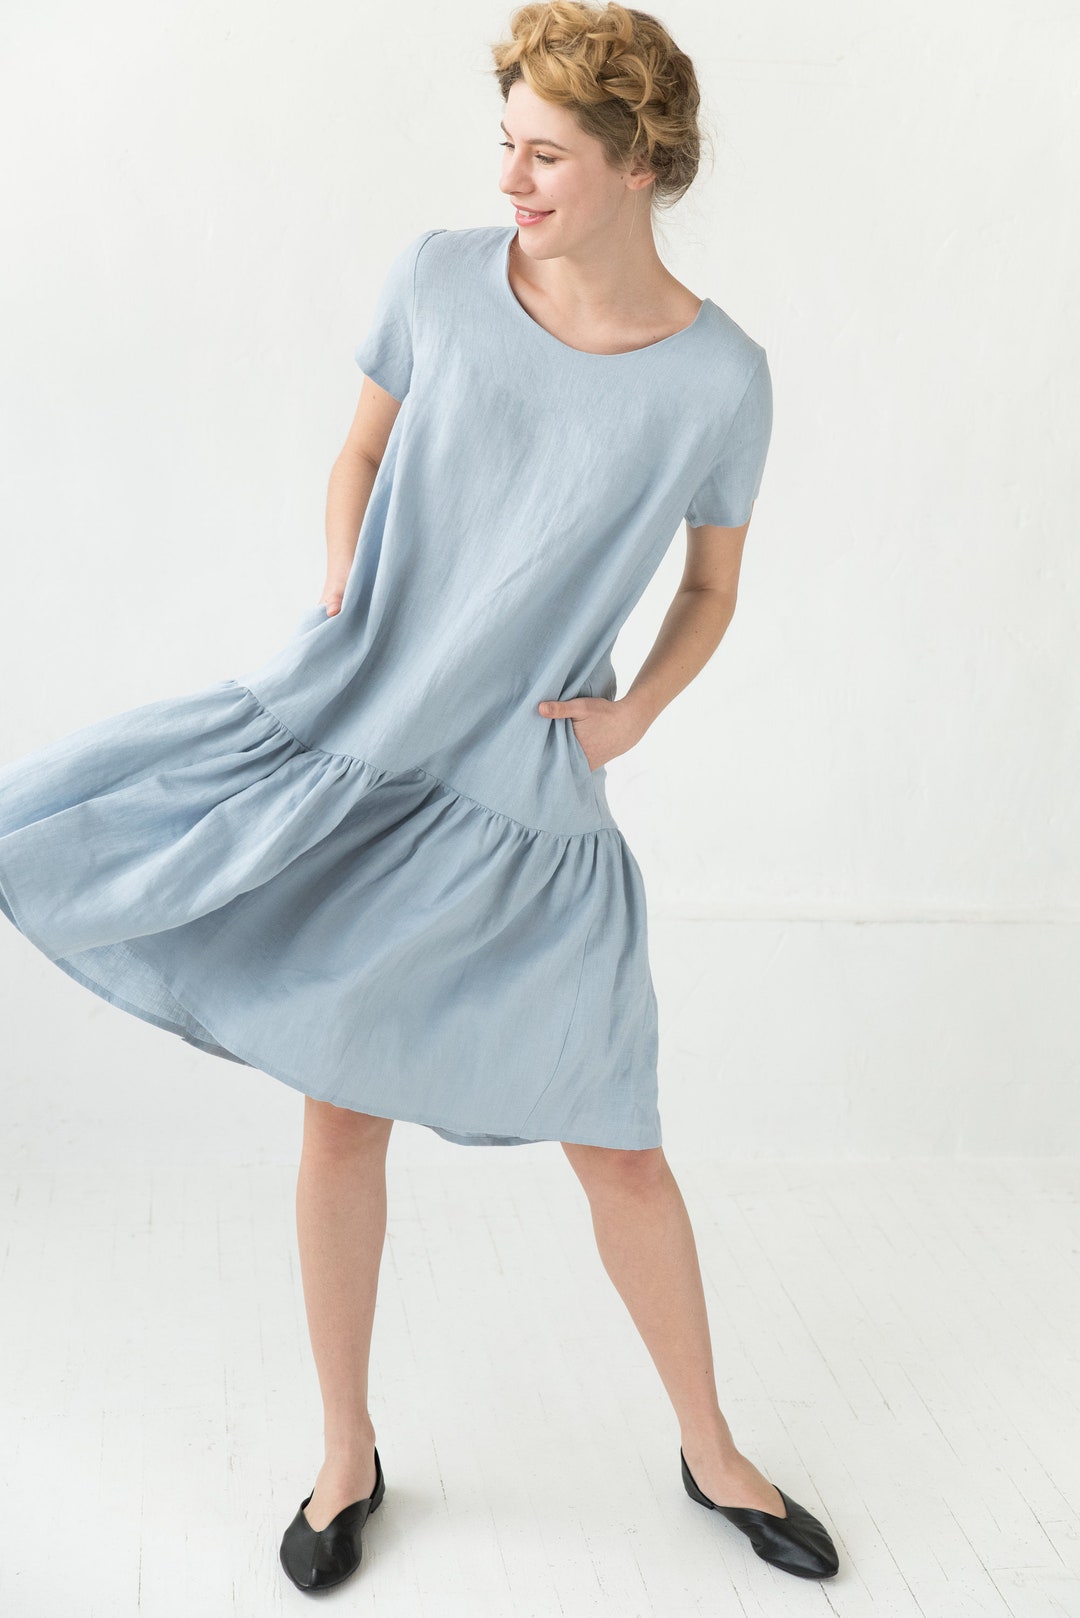 Linen Dress Light Blue Dress Flare Dress Summer Linen - Etsy